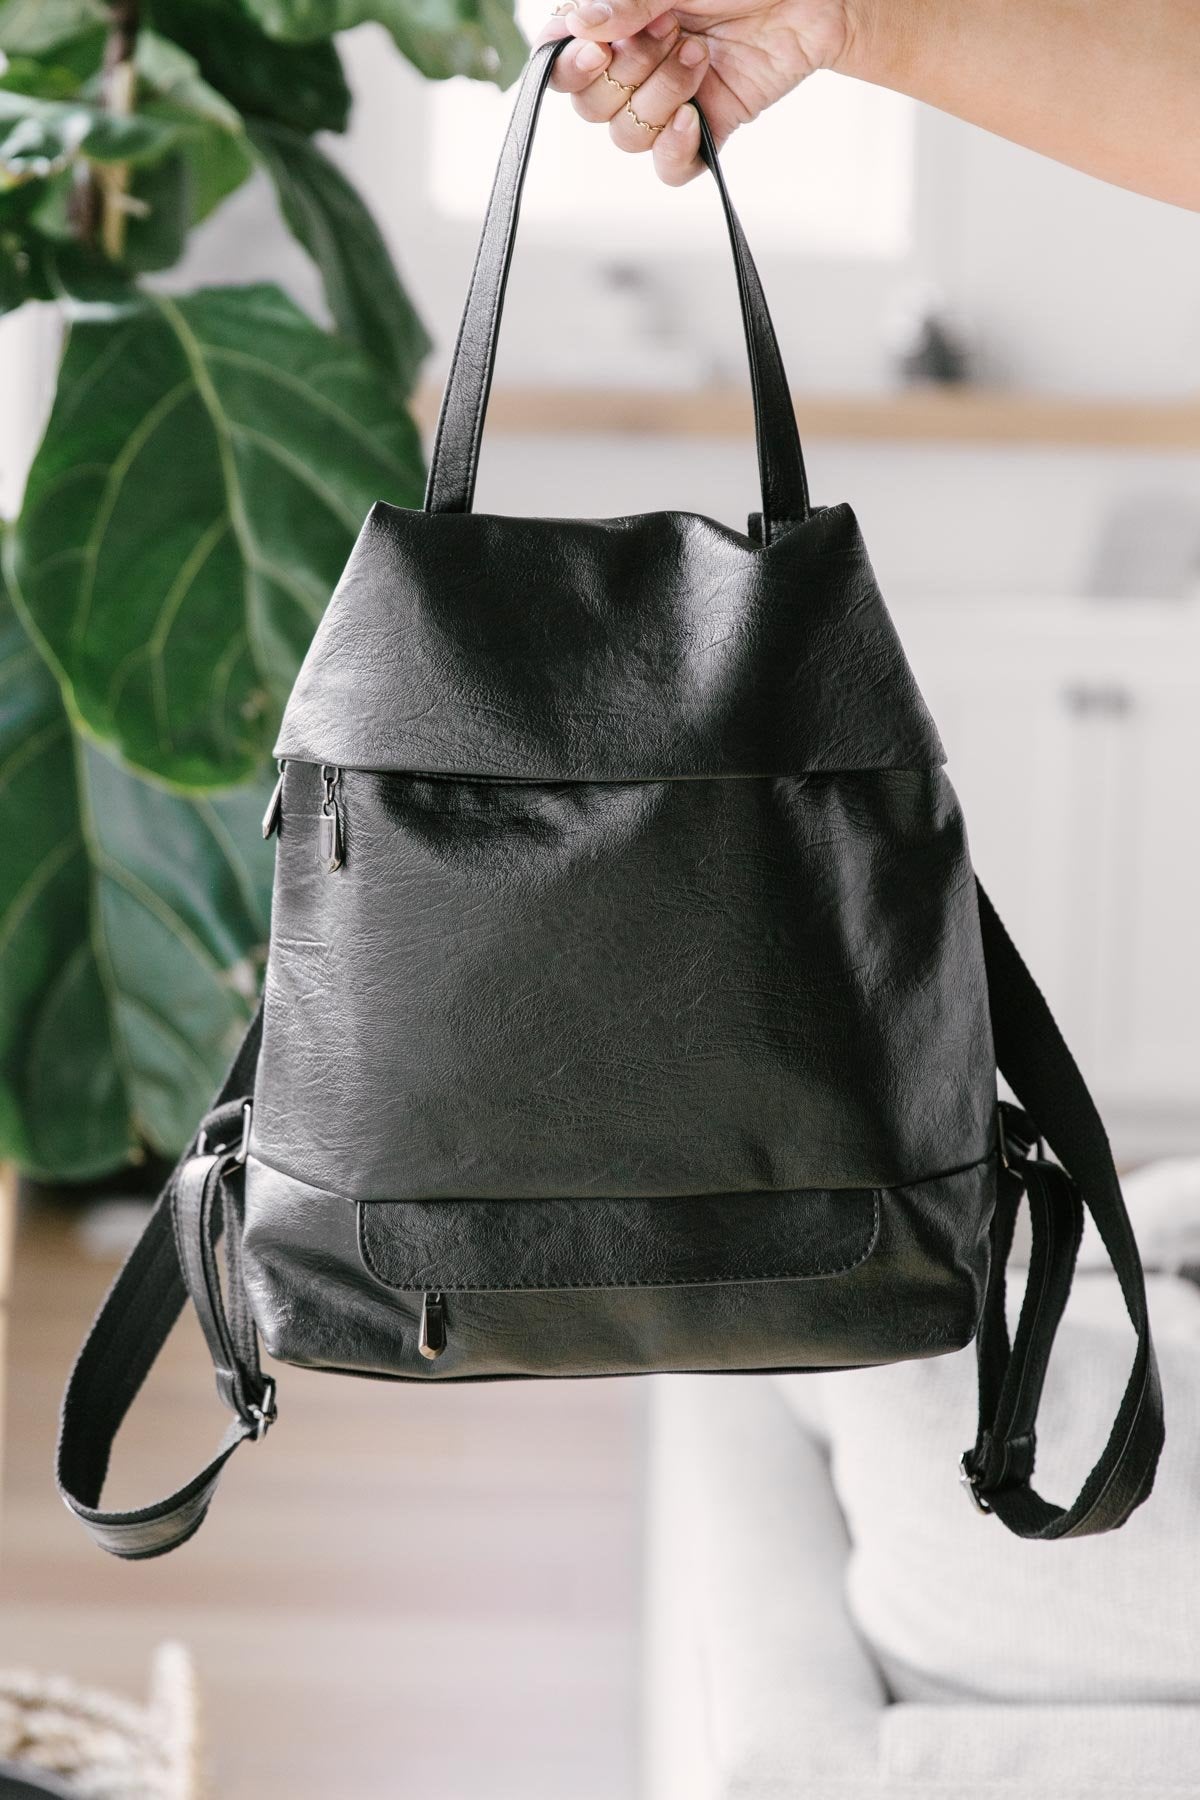 The Brenna Backpack